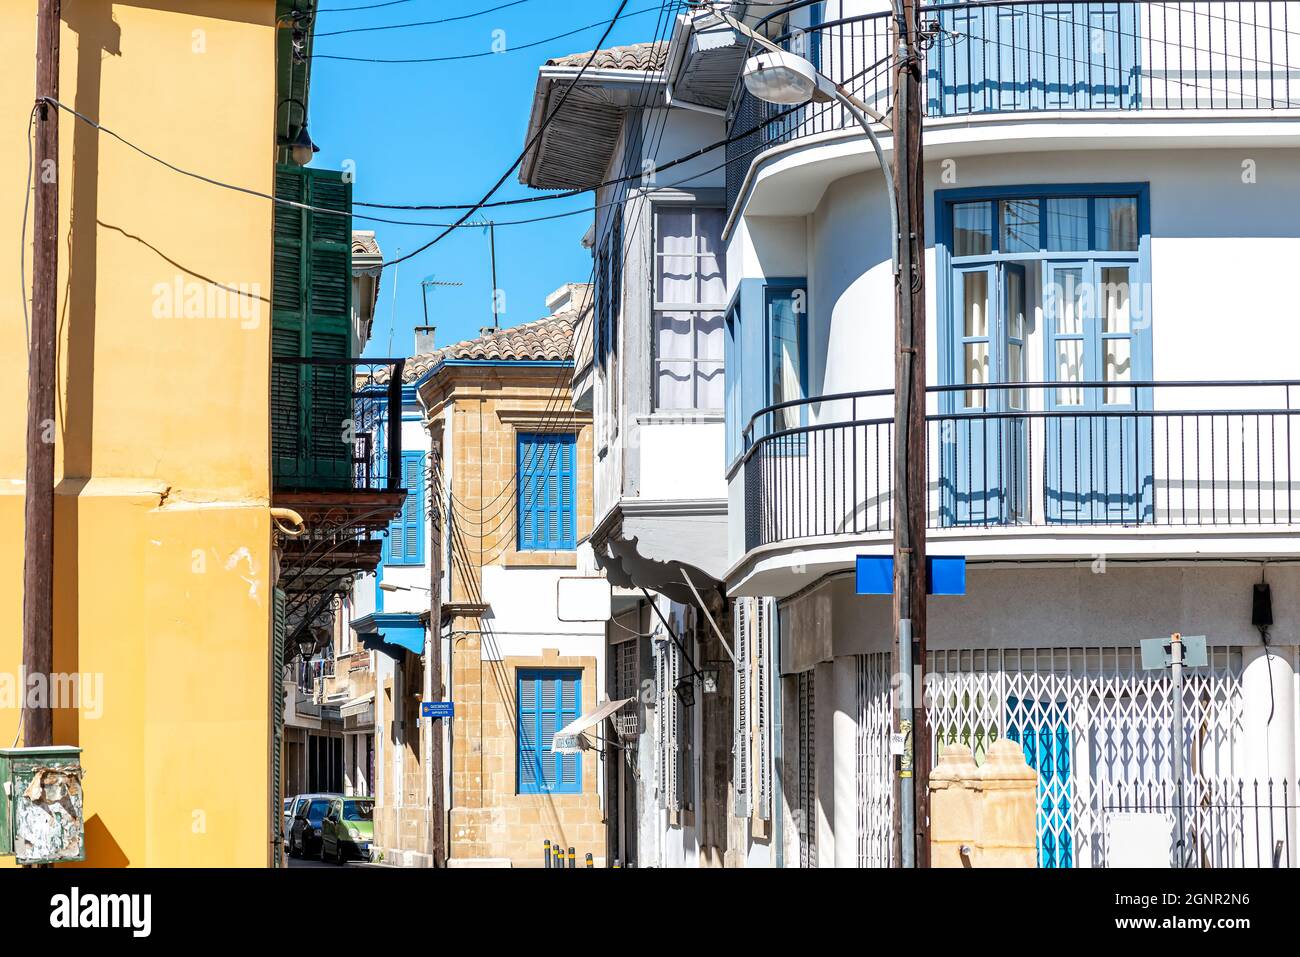 Vue sur les bâtiments historiques de la vieille ville de Nicosie, Chypre Banque D'Images